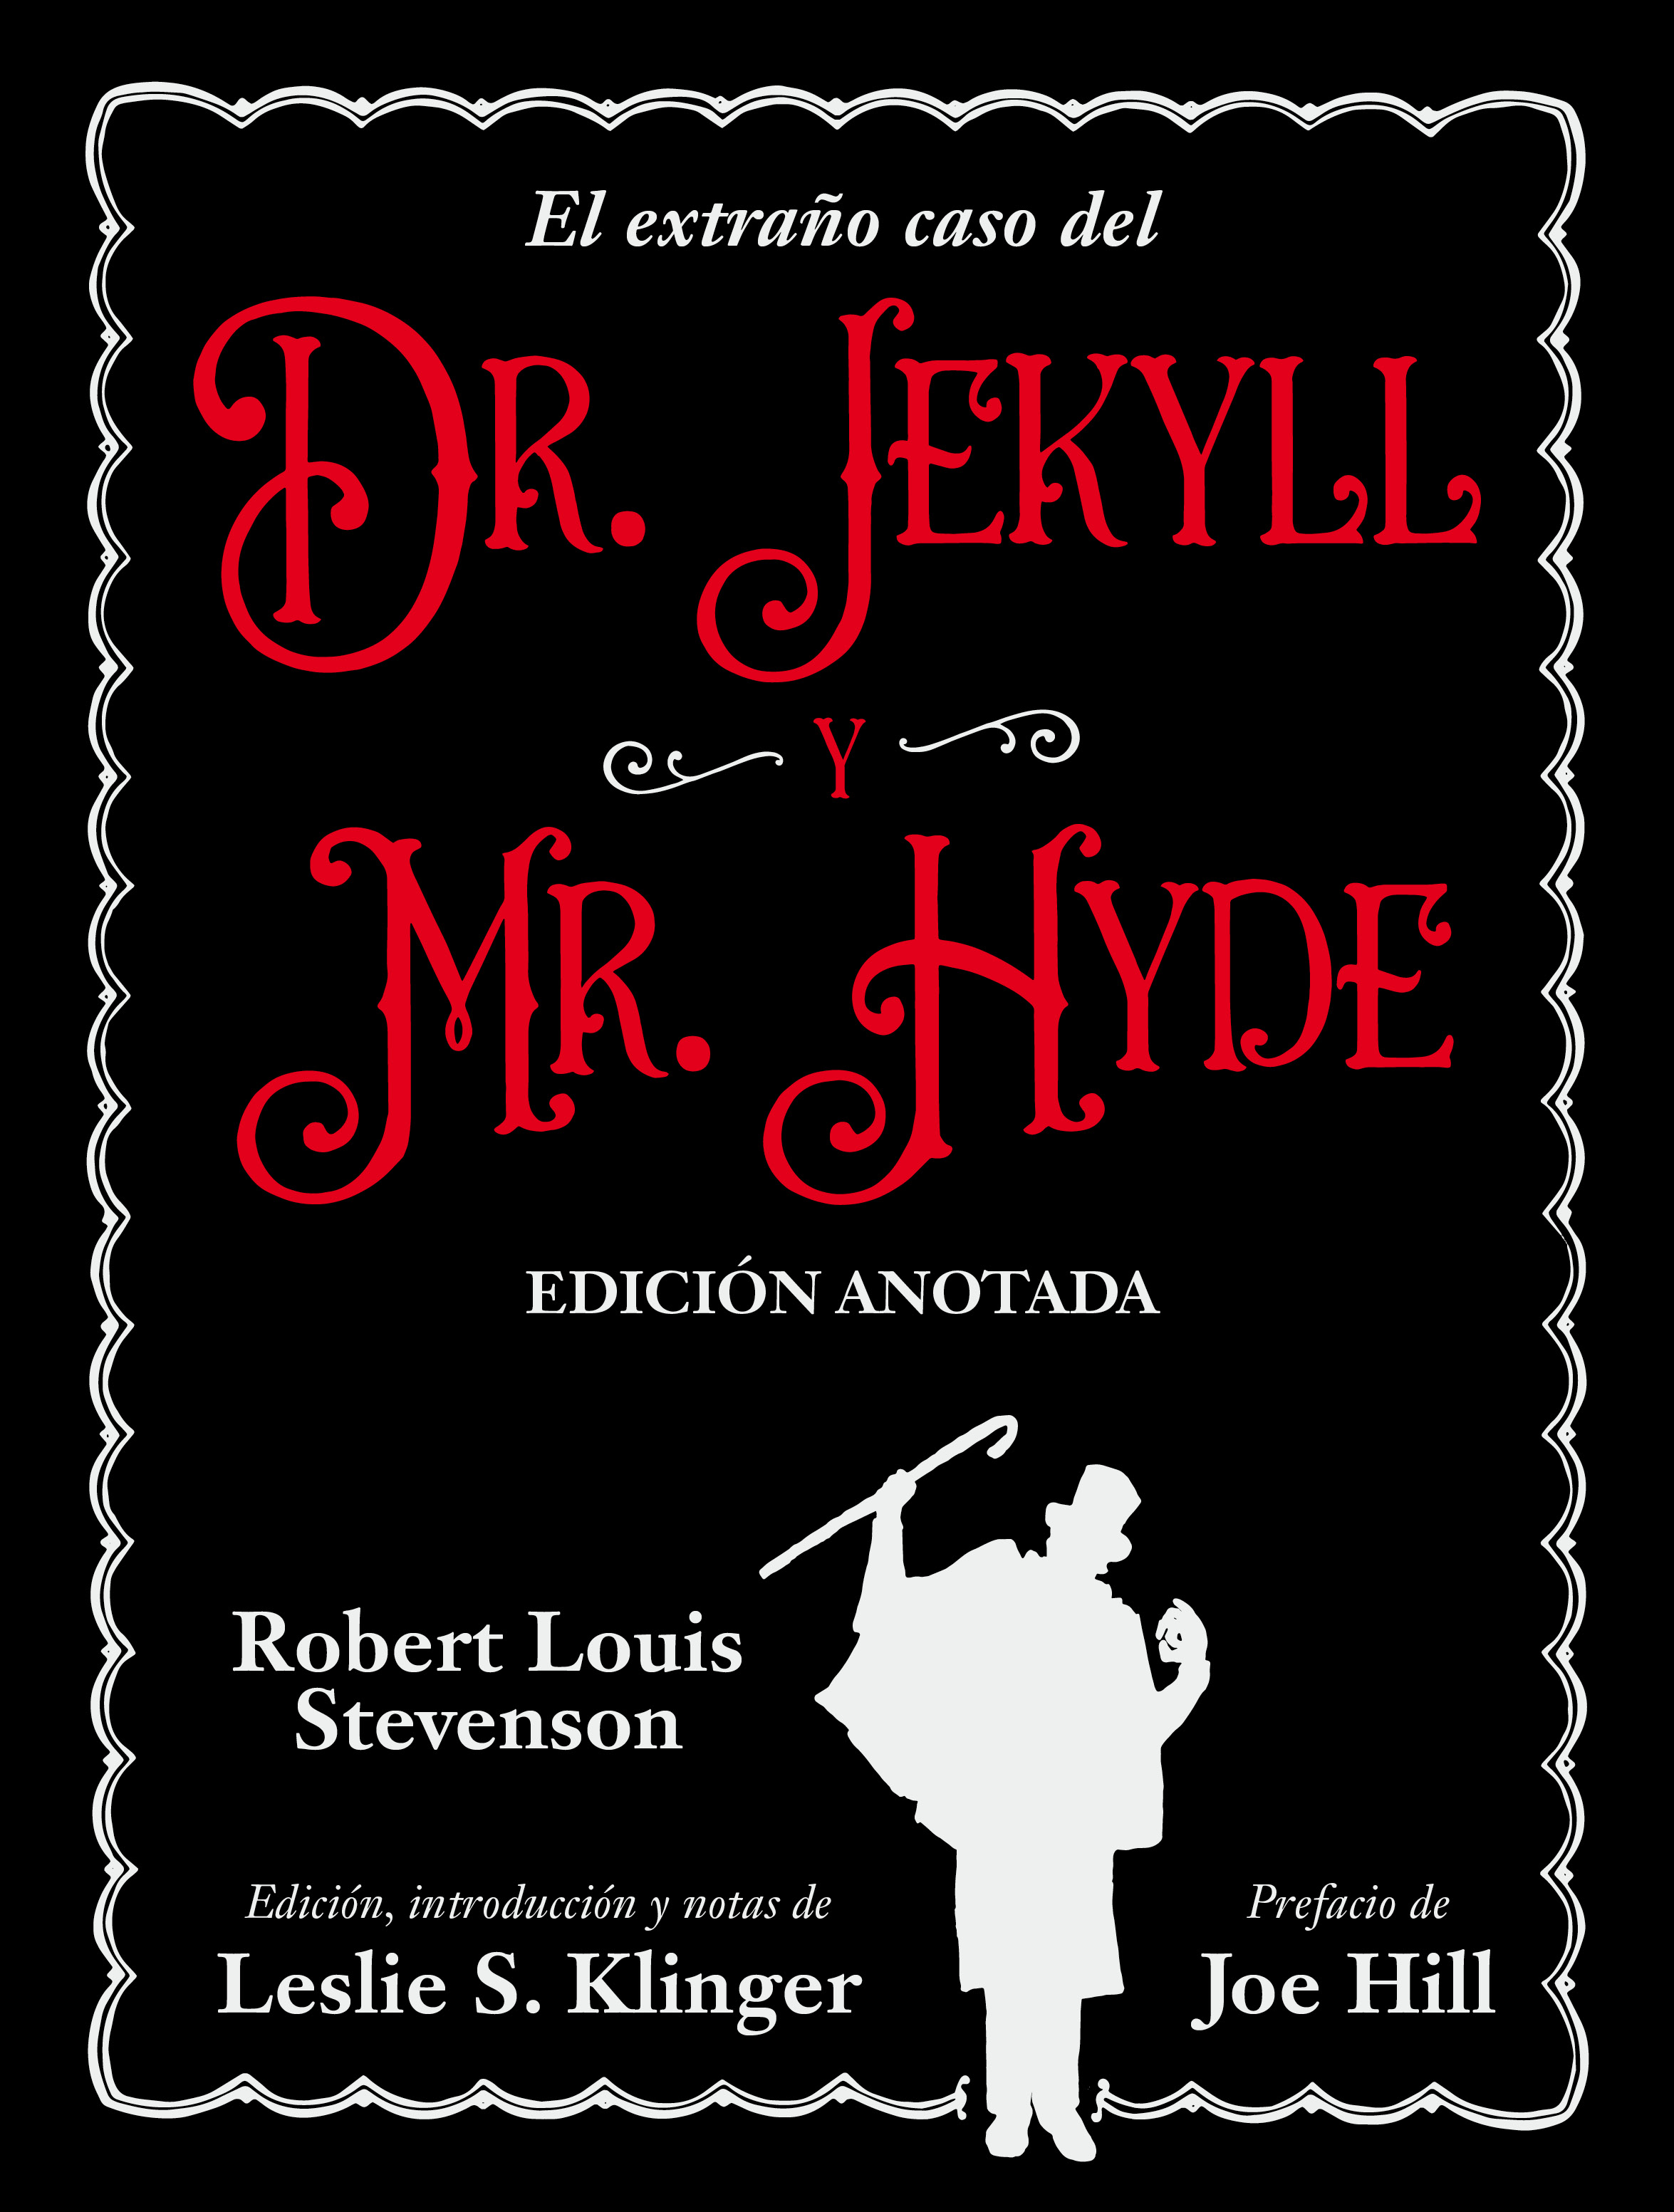 EL EXTRAÑO CASO DEL DR. JEKYLL Y MR. HYDE - Robert Louis Stevenson